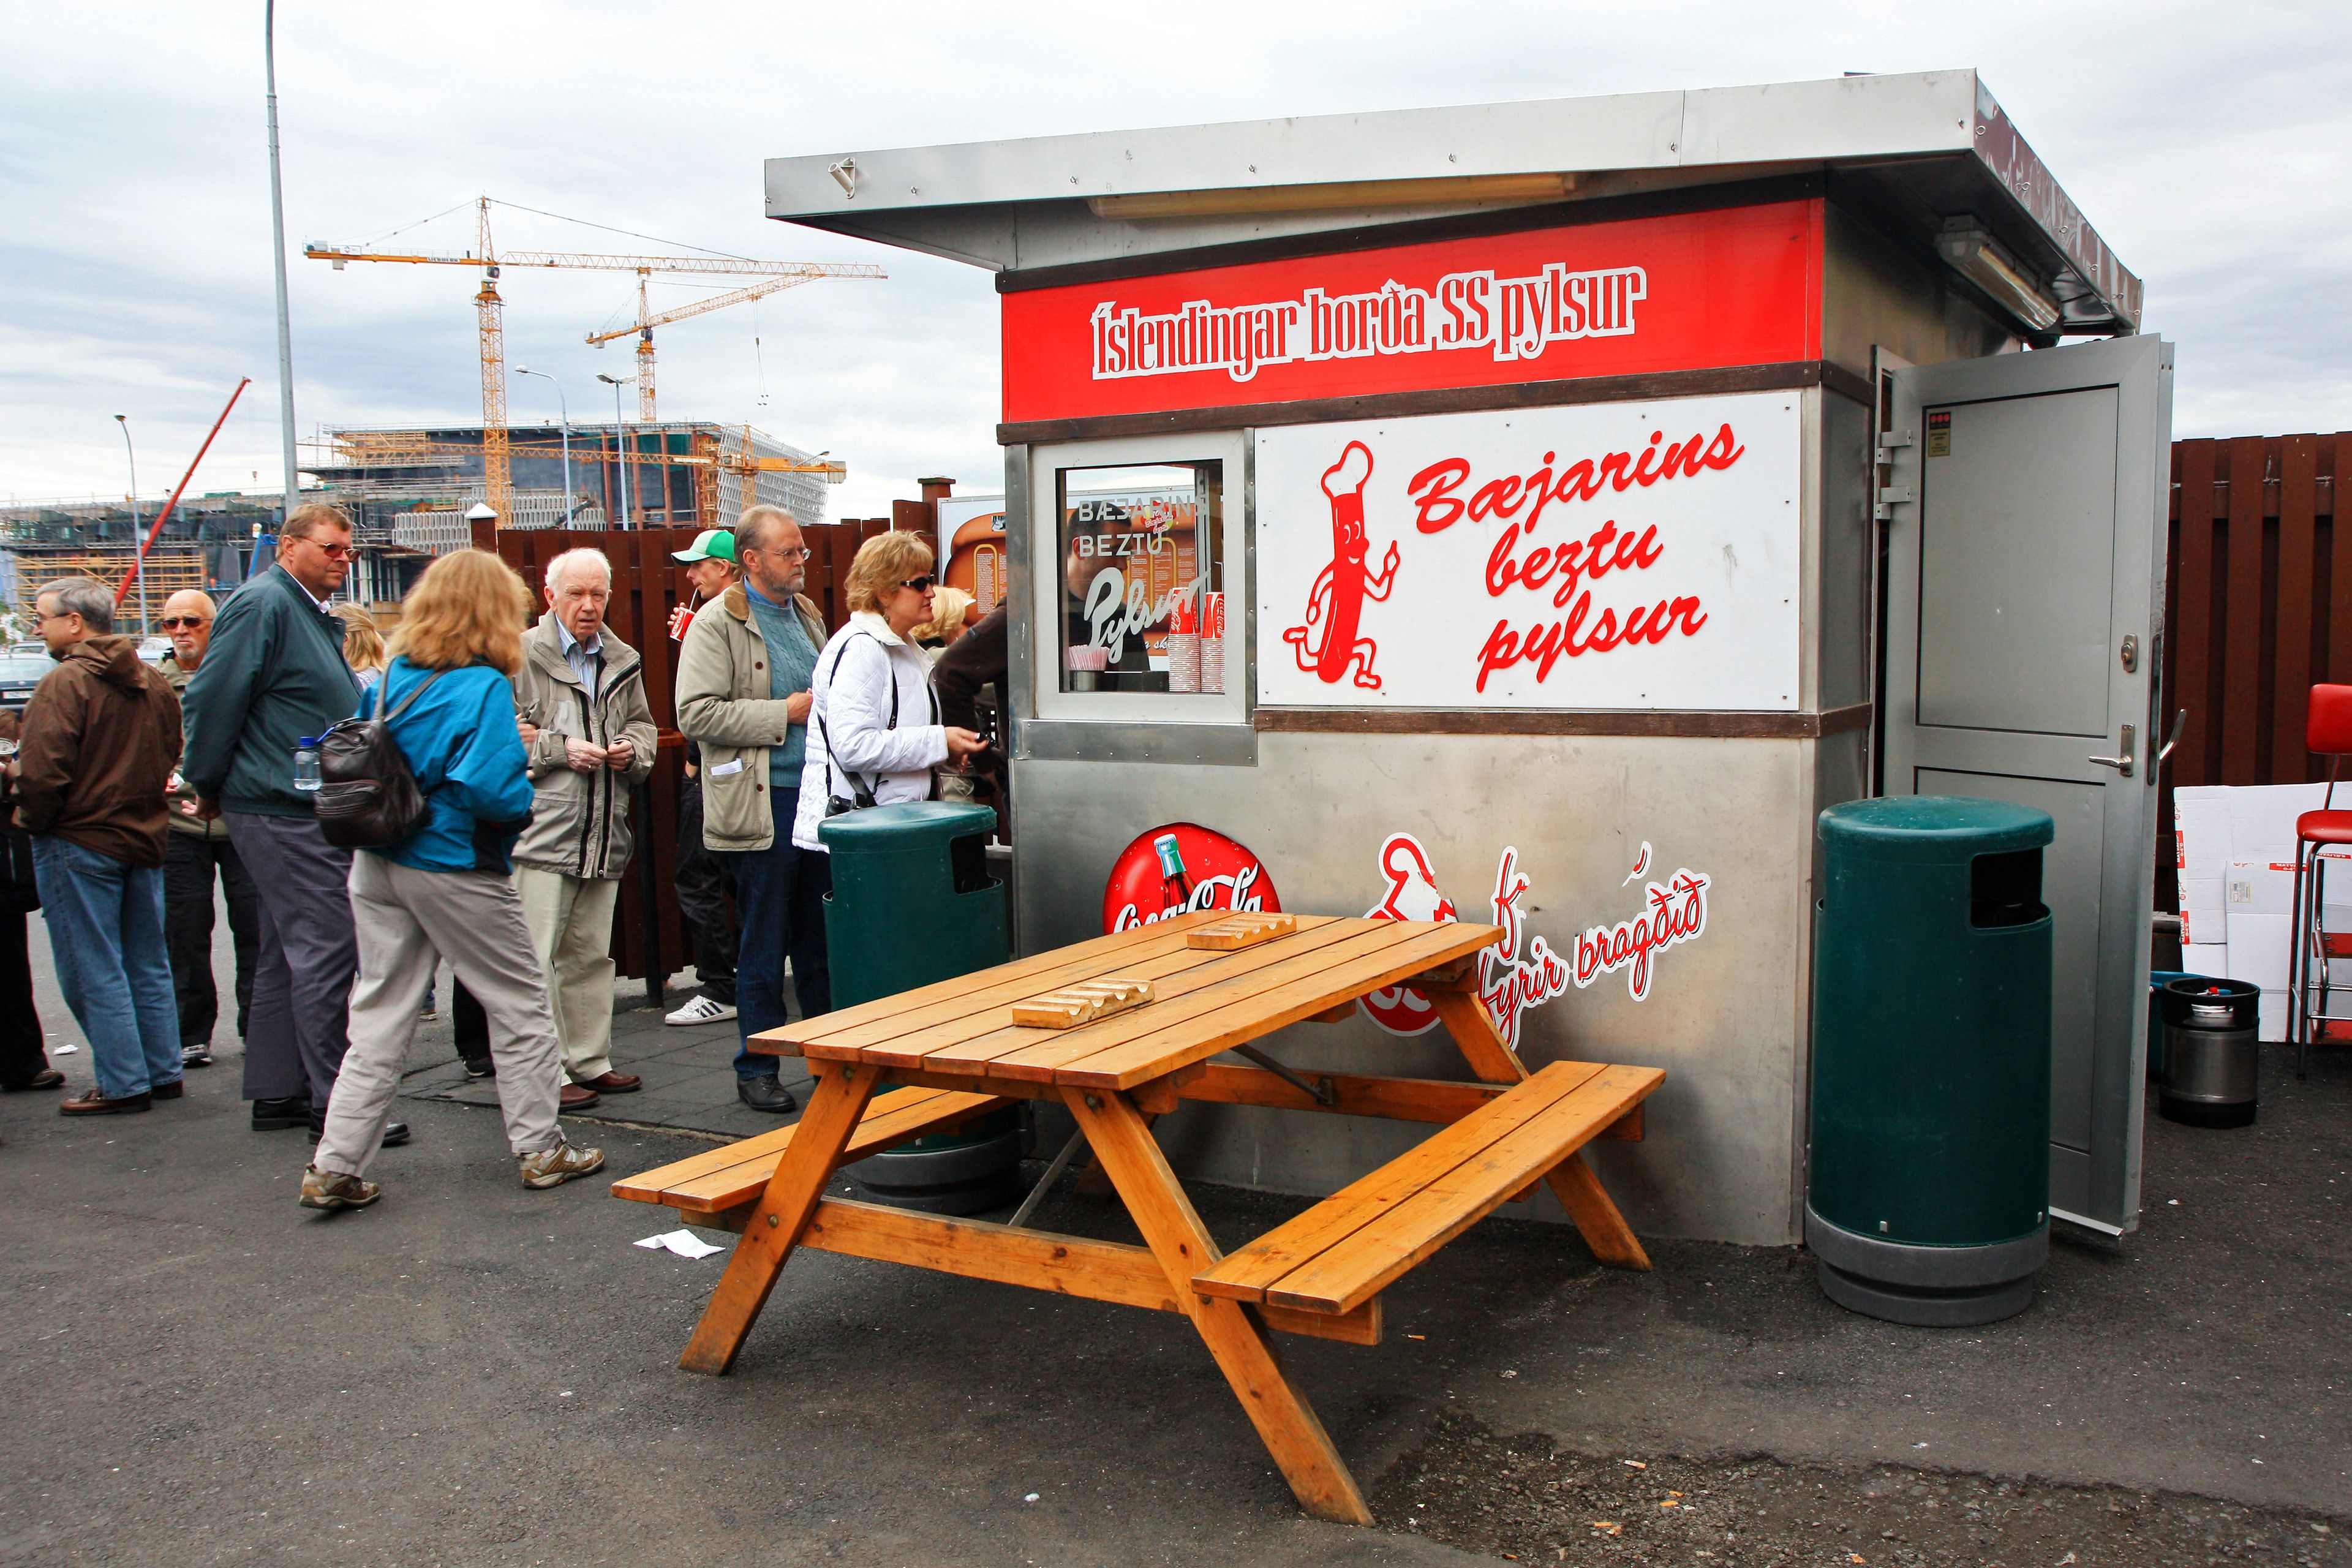 Famous Reykjavik hot dog stand